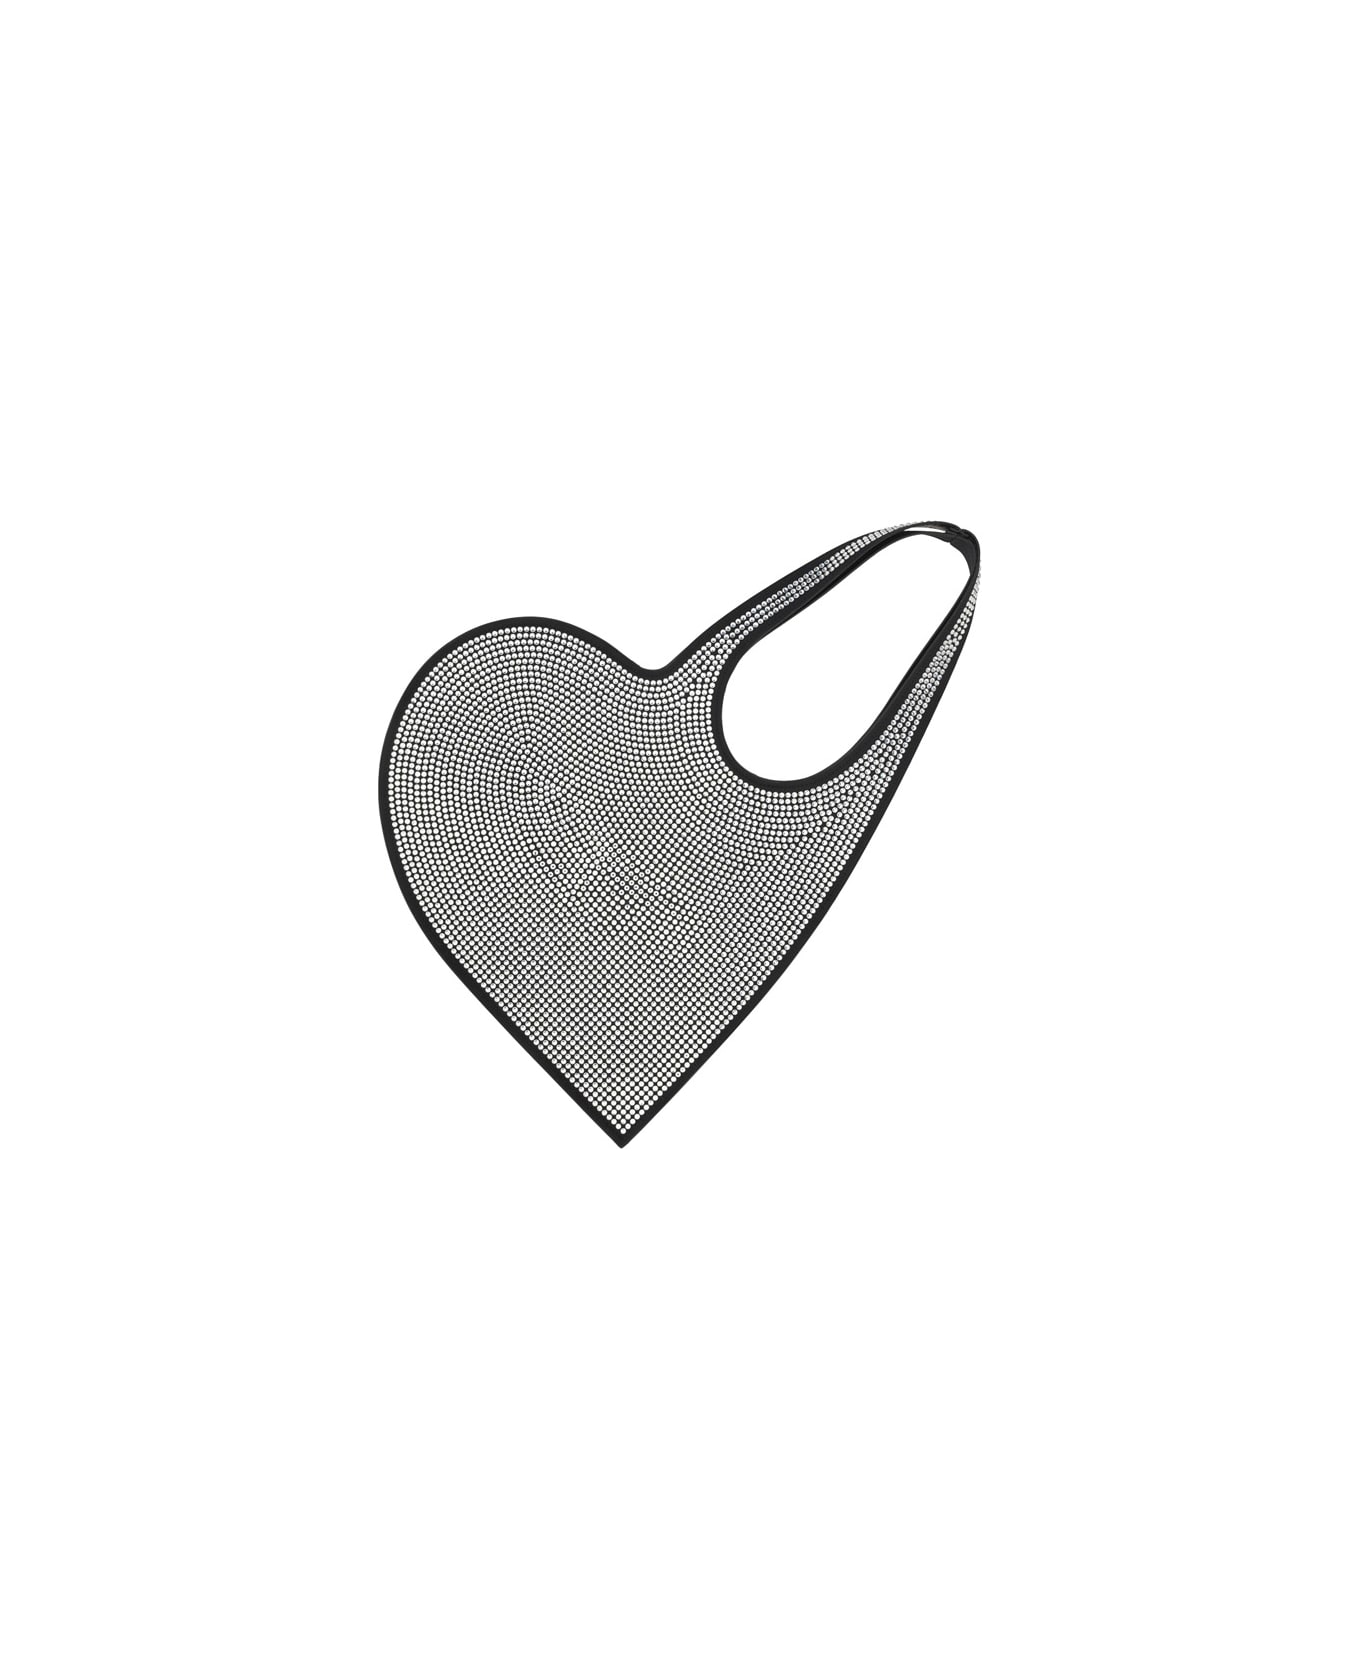 Coperni Mini Heart Totte Bag - BLACK/SILVER